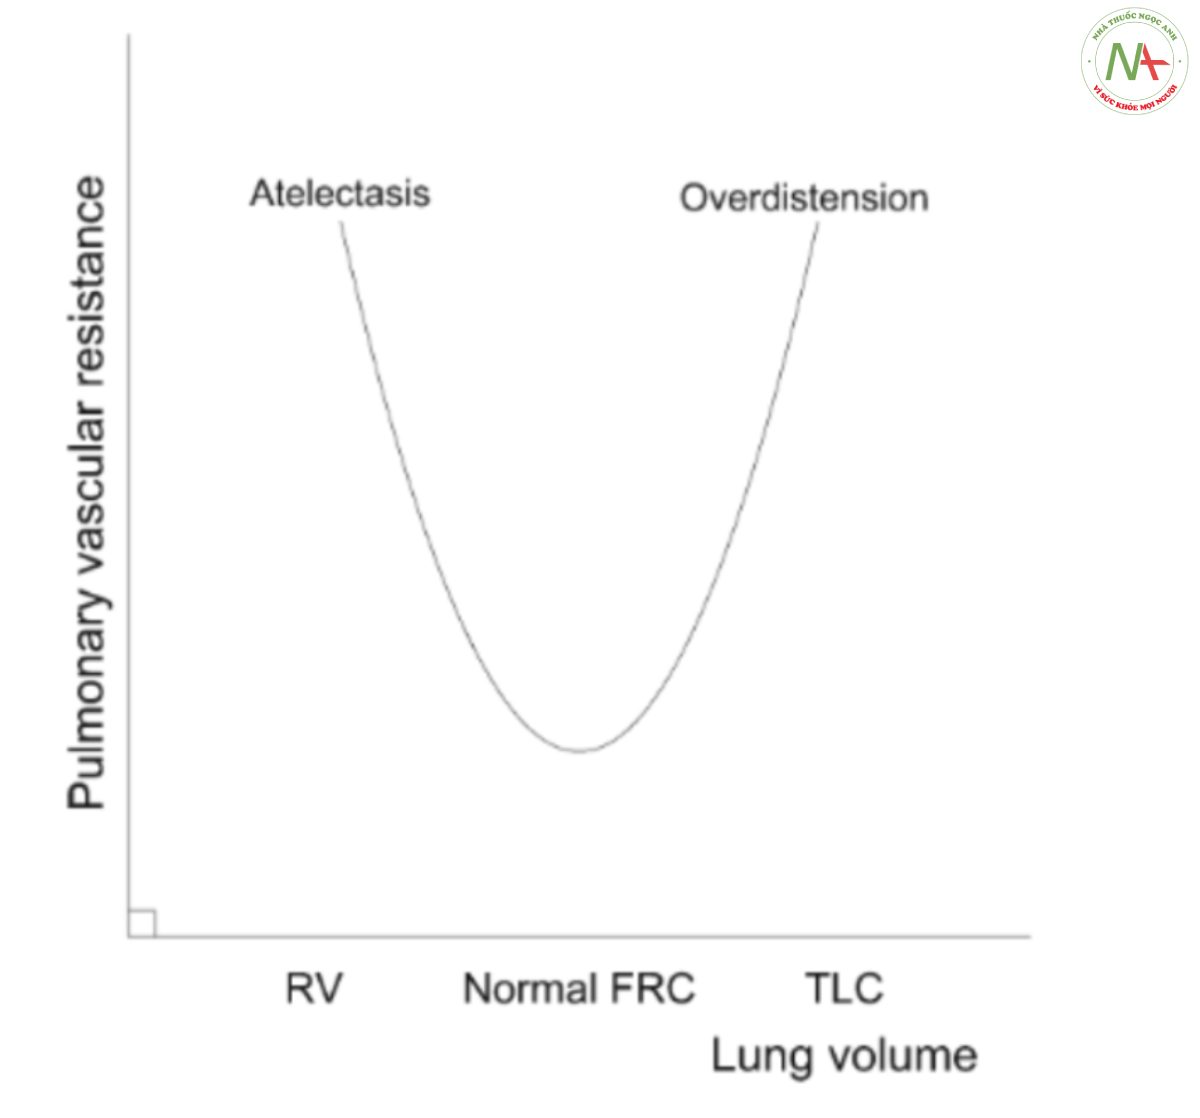 Hình 3 Sức cản mạch máu phổi (PVR), yếu tố chính quyết định hậu tải thất phải, có liên quan đến thể tích phổi theo kiểu hai mặt